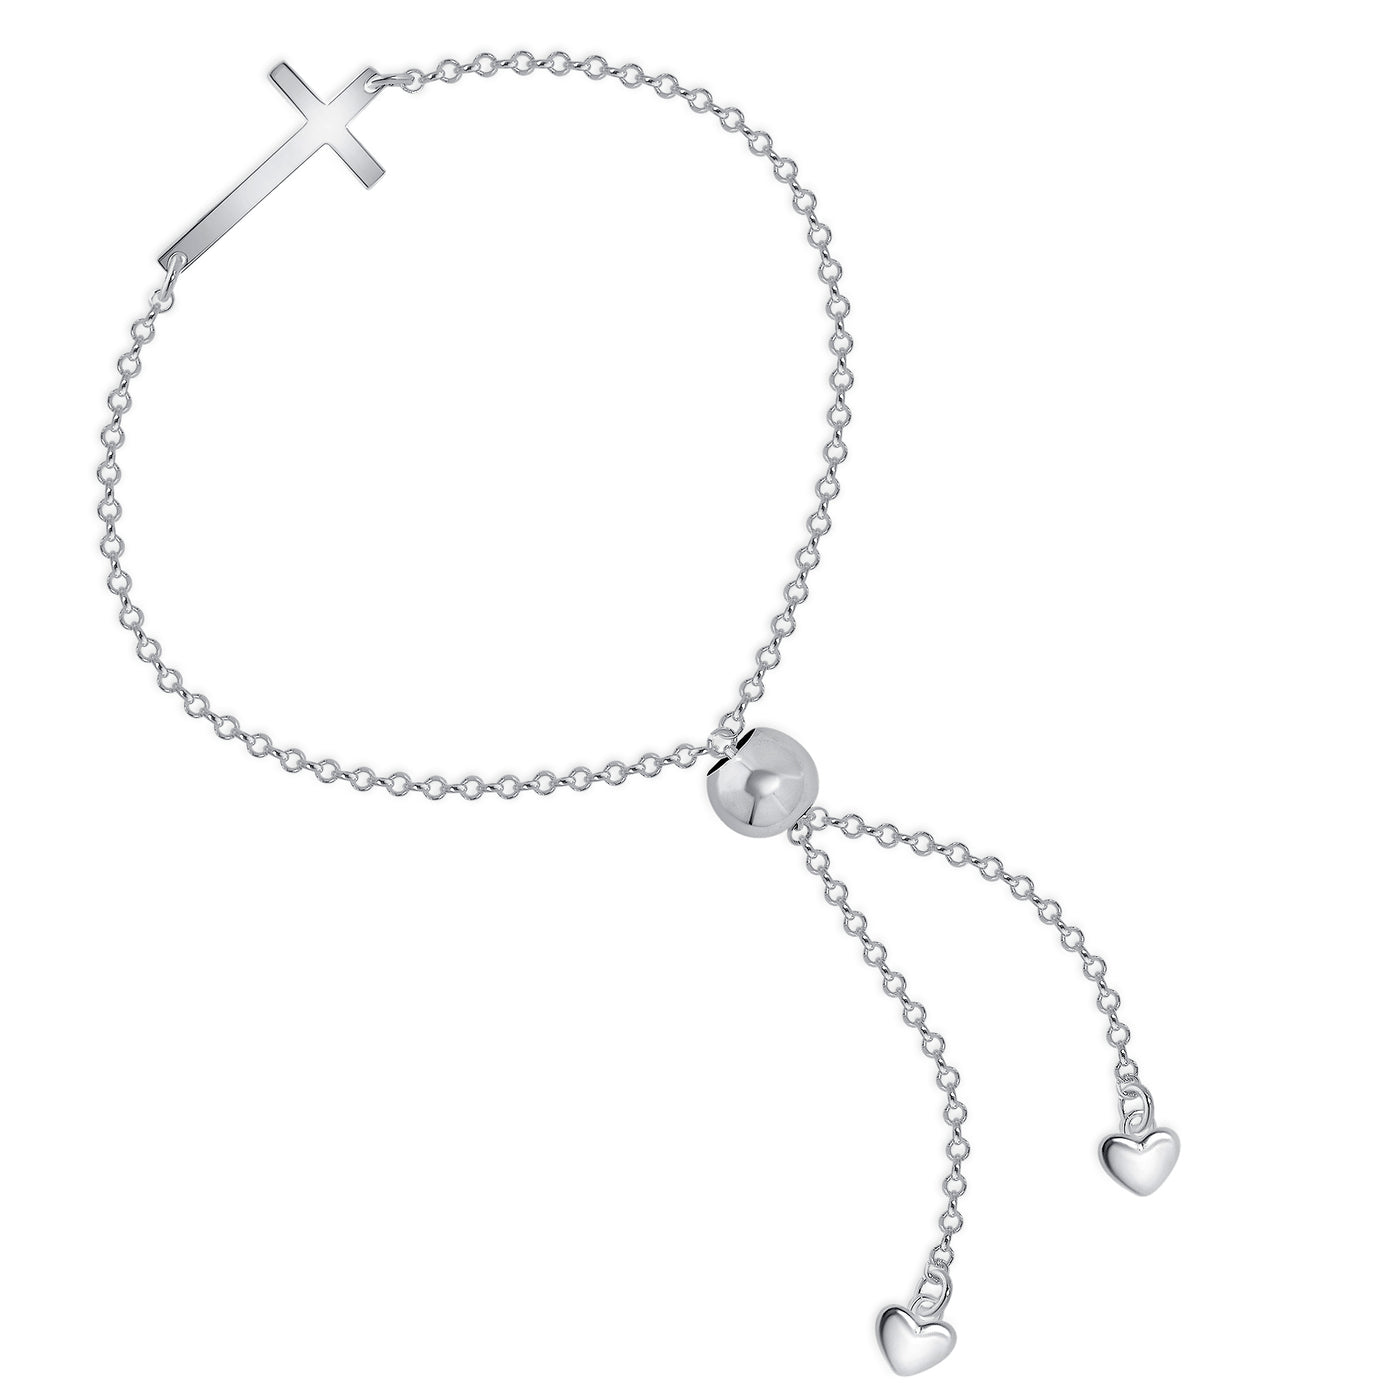 Italian Sterling Silver Horizontal Plain Sideways Cross Adjustable Link Chain Bracelet